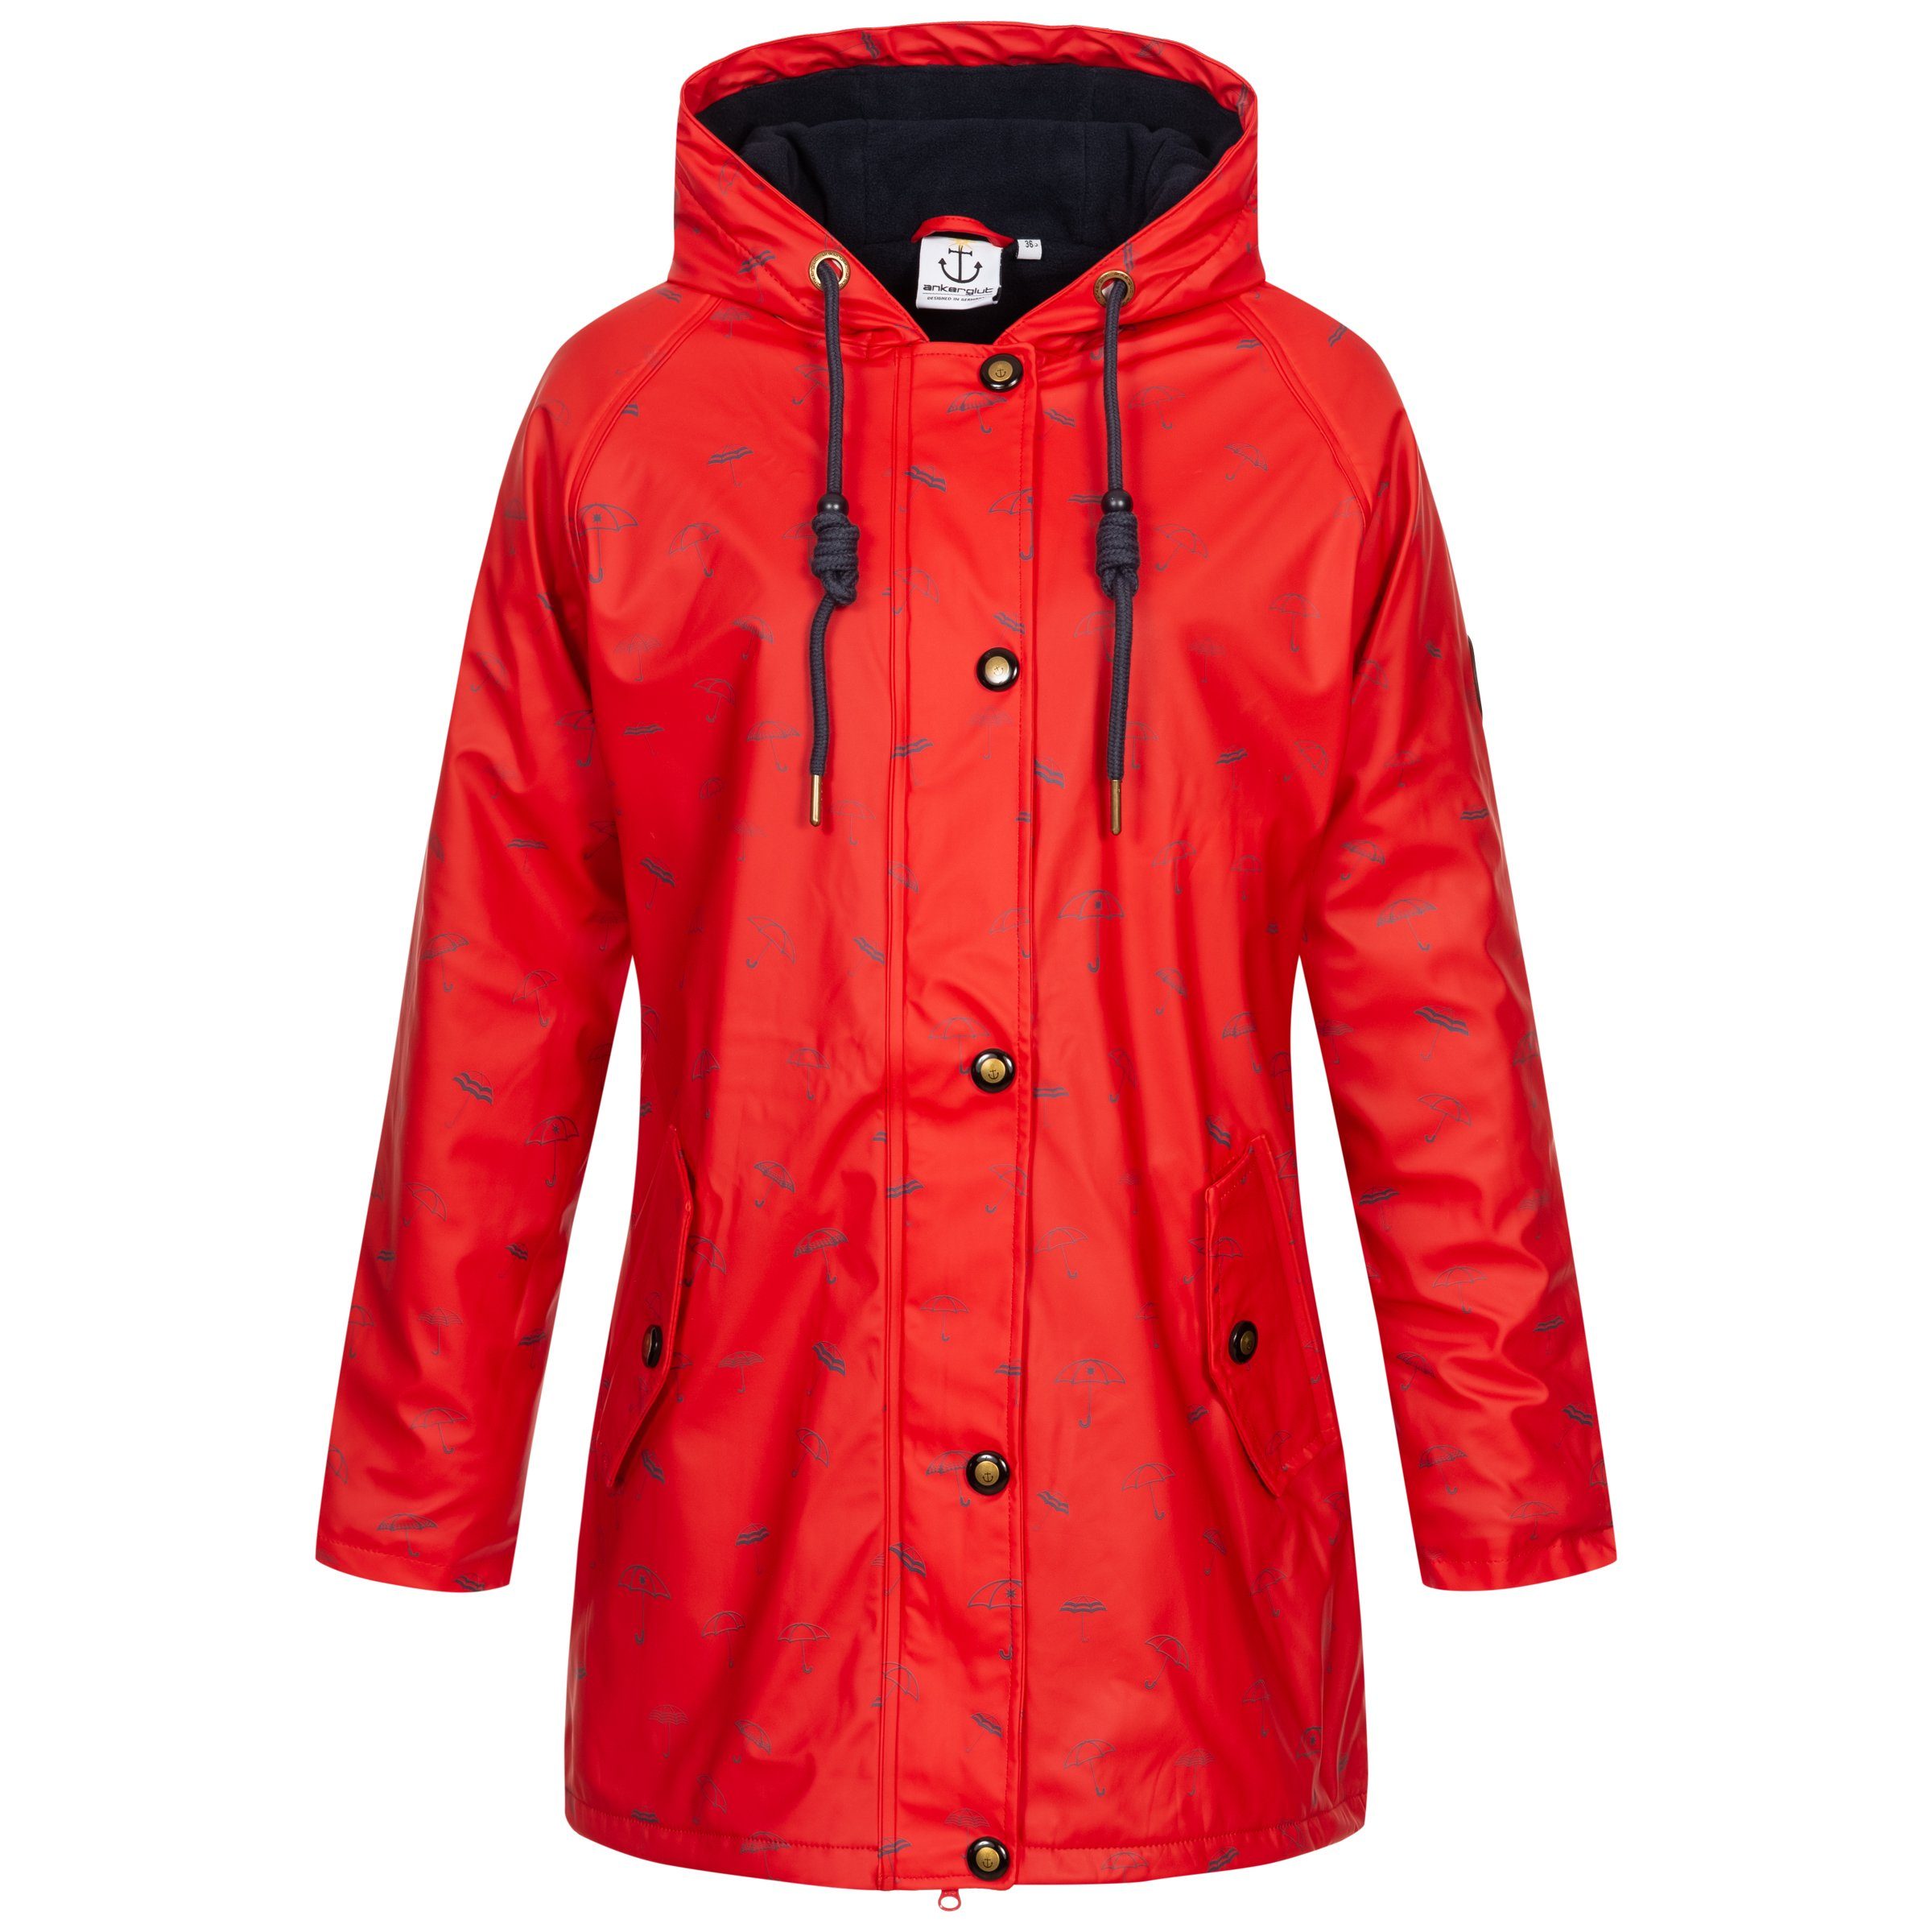 auch #ankerglutmeer DEPROC Regenjacke red in Größen Friesennerz Active erhältlich WOMEN CS Großen